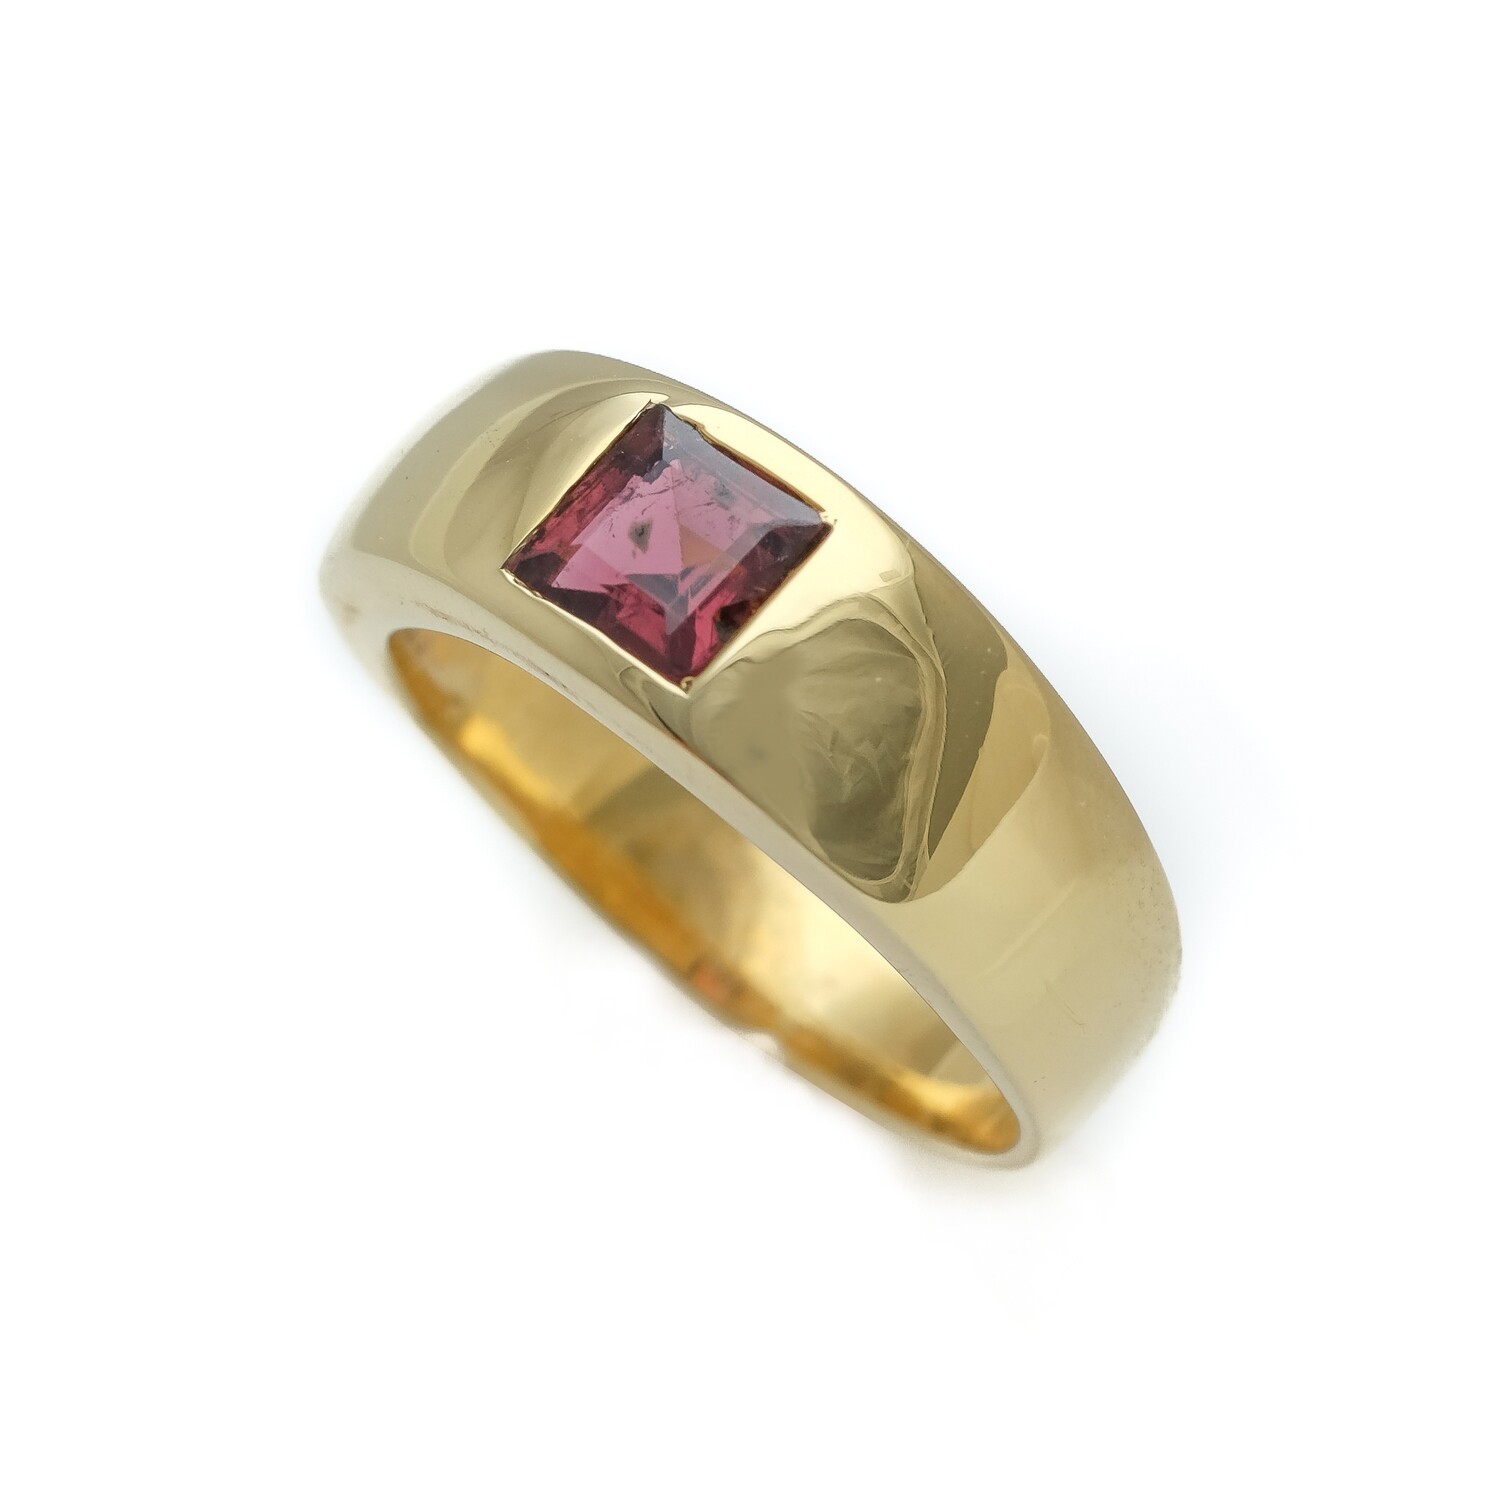 Elemental Gypsy Ring - Pink Tourmaline 6⌀ (Vermeil)